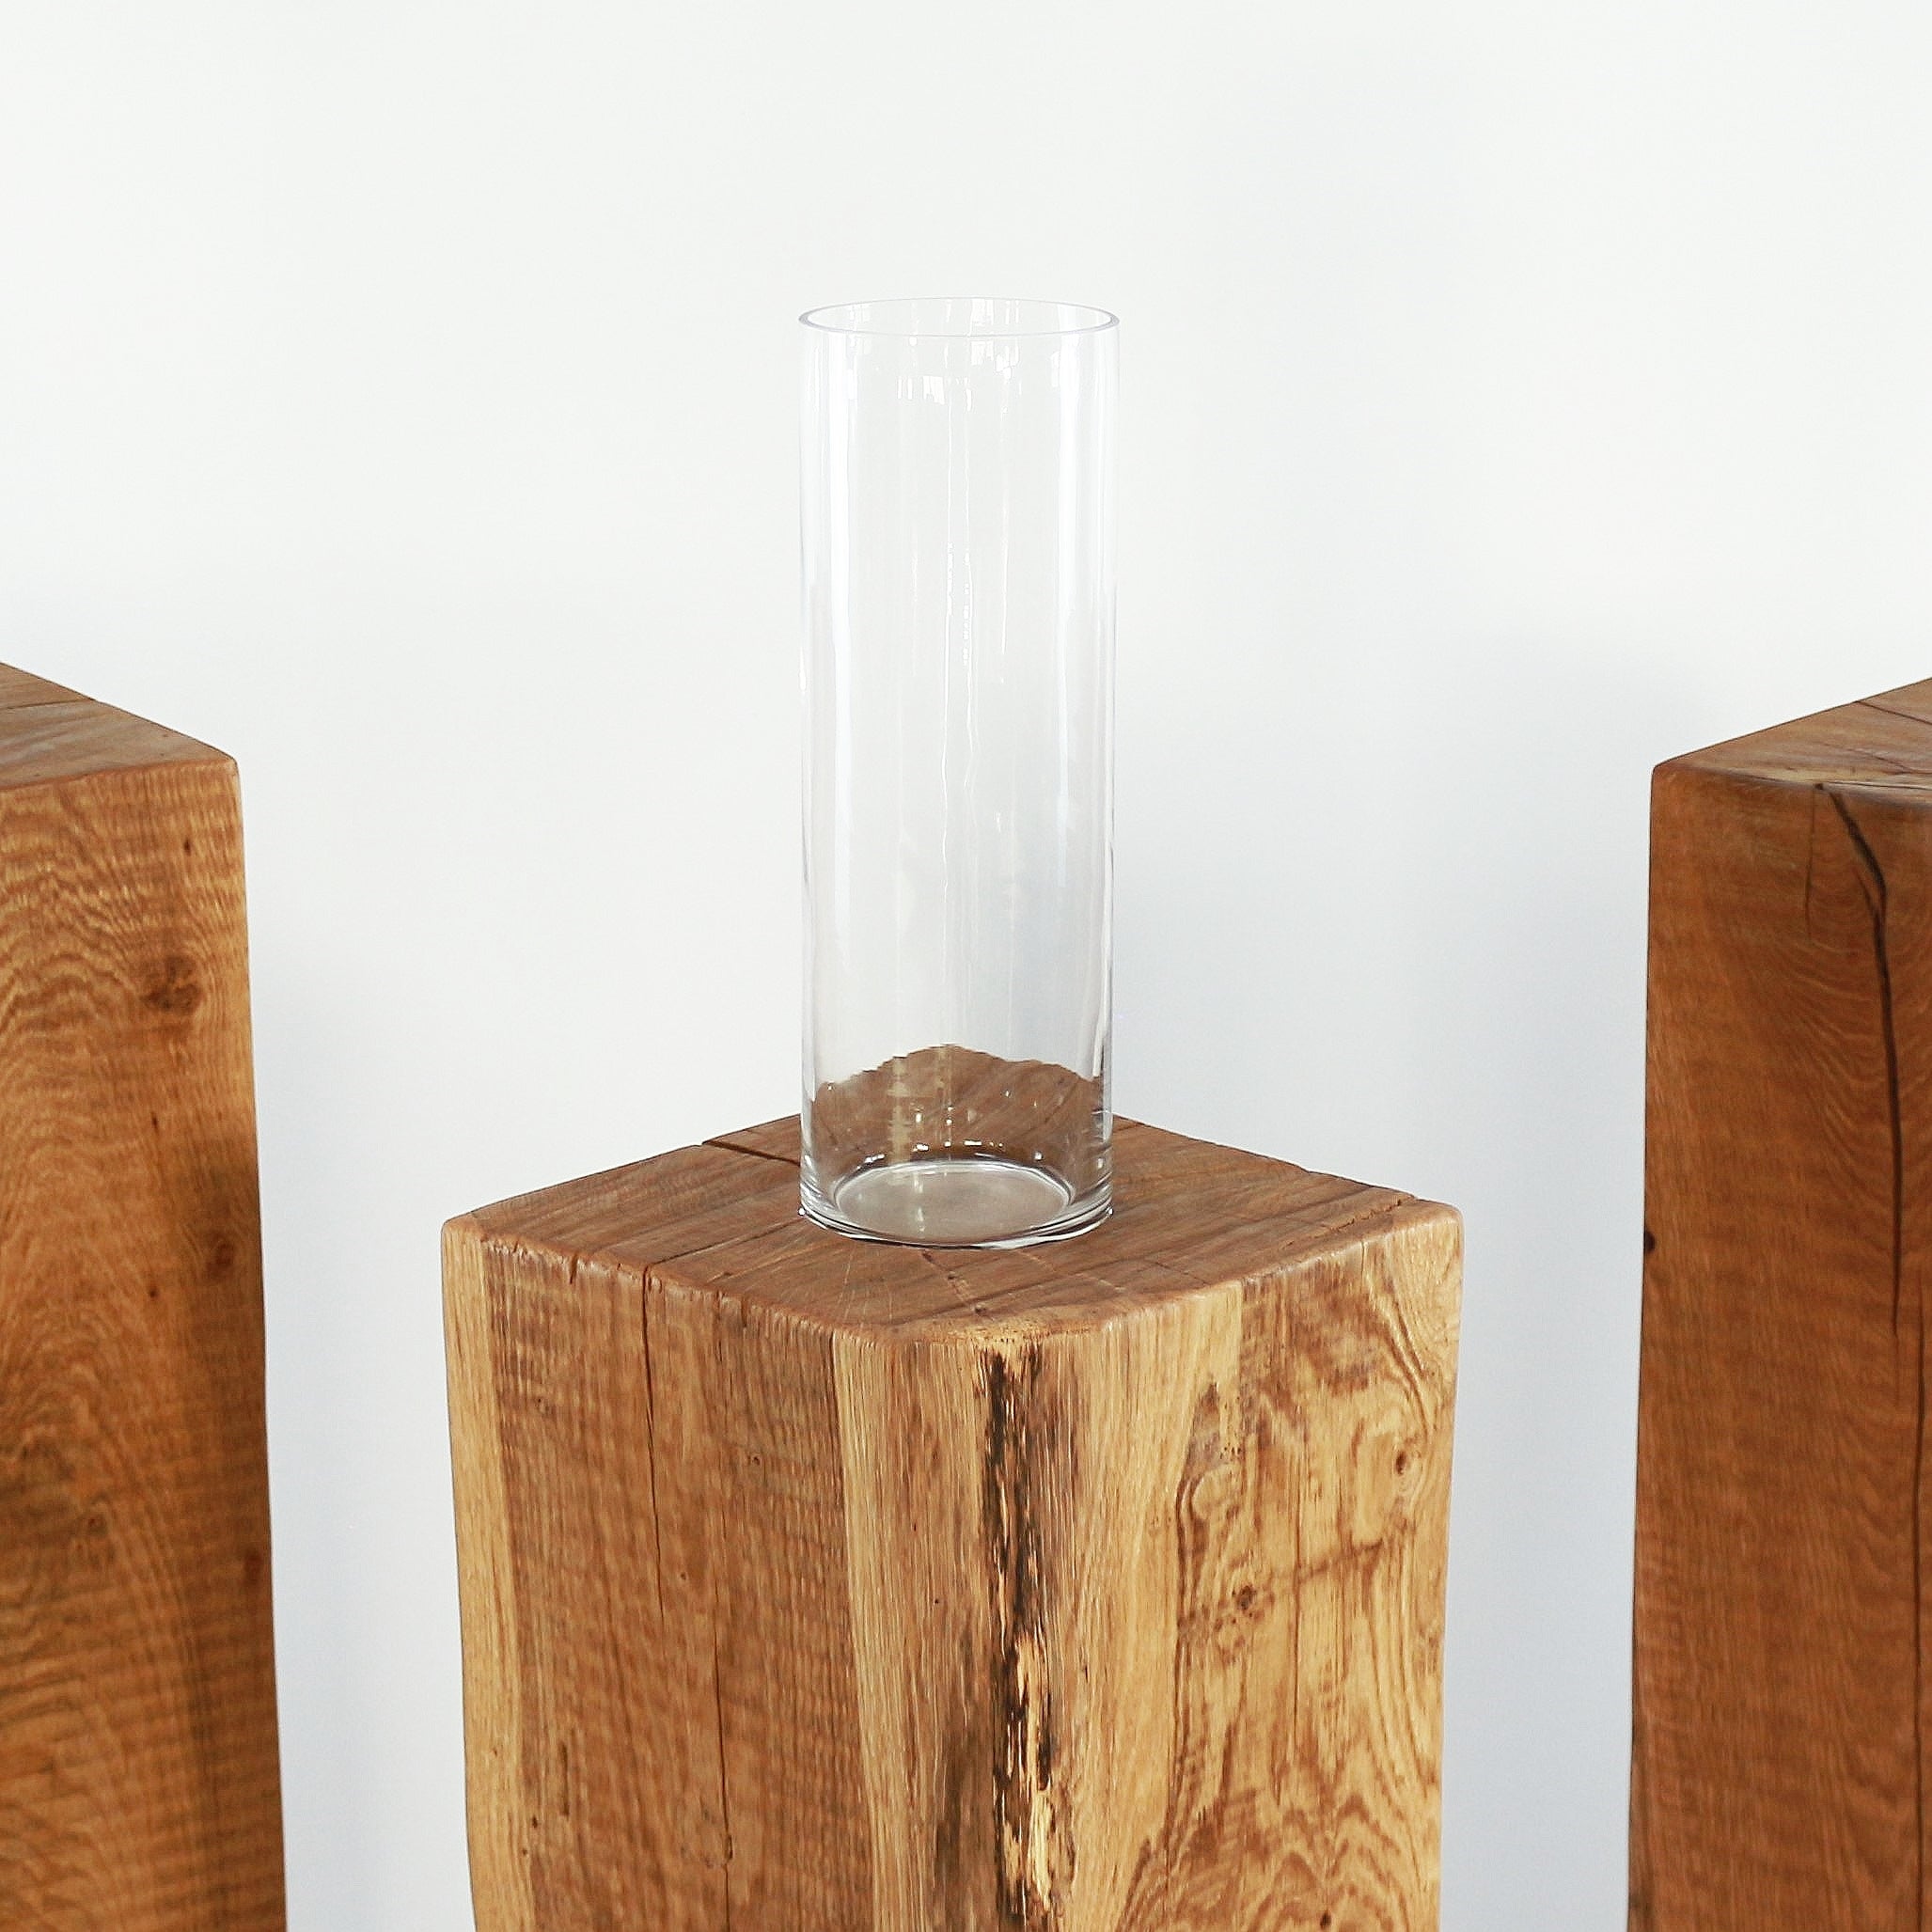 Eichenstelen aus Massiven Eichenholz. Mit einem massiven, naturgeölten Holzkörper und einem dekorativen Glaszylinder (Ø 10 x H 30cm), der oben Dezent eingelassen ist.